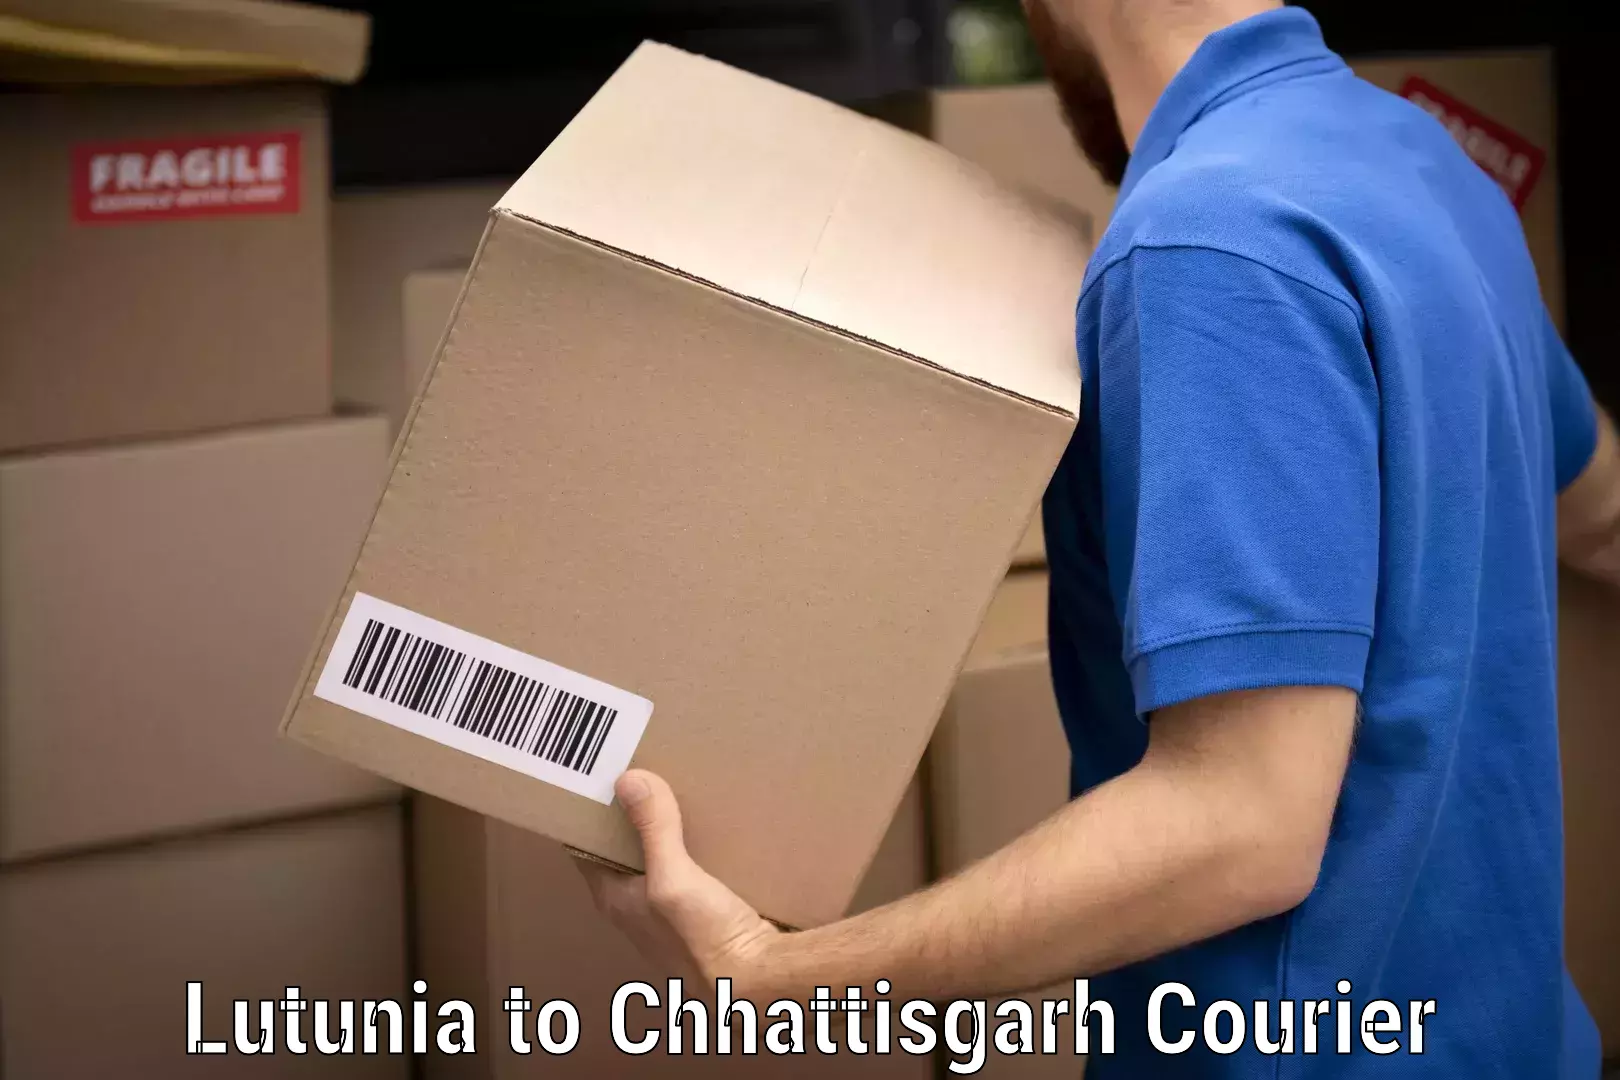 Efficient moving company Lutunia to Chhattisgarh